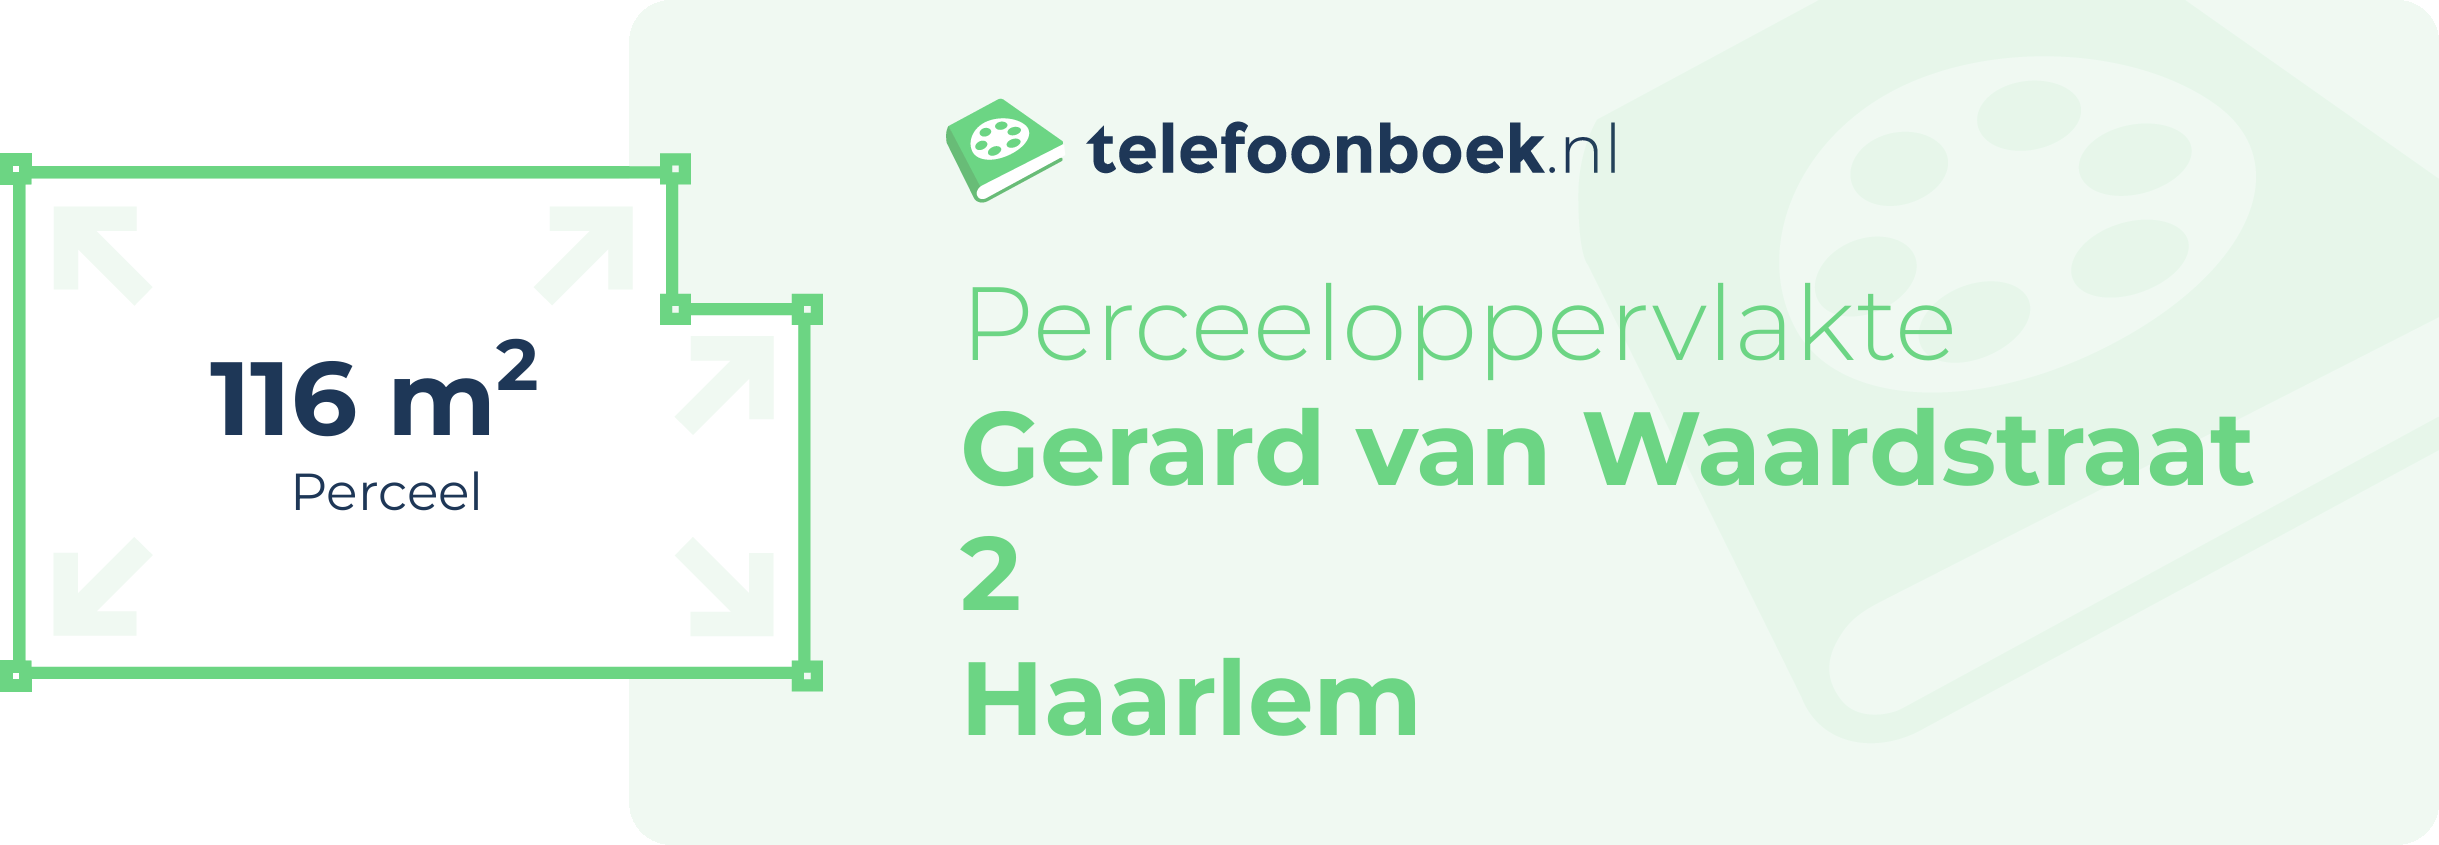 Perceeloppervlakte Gerard Van Waardstraat 2 Haarlem